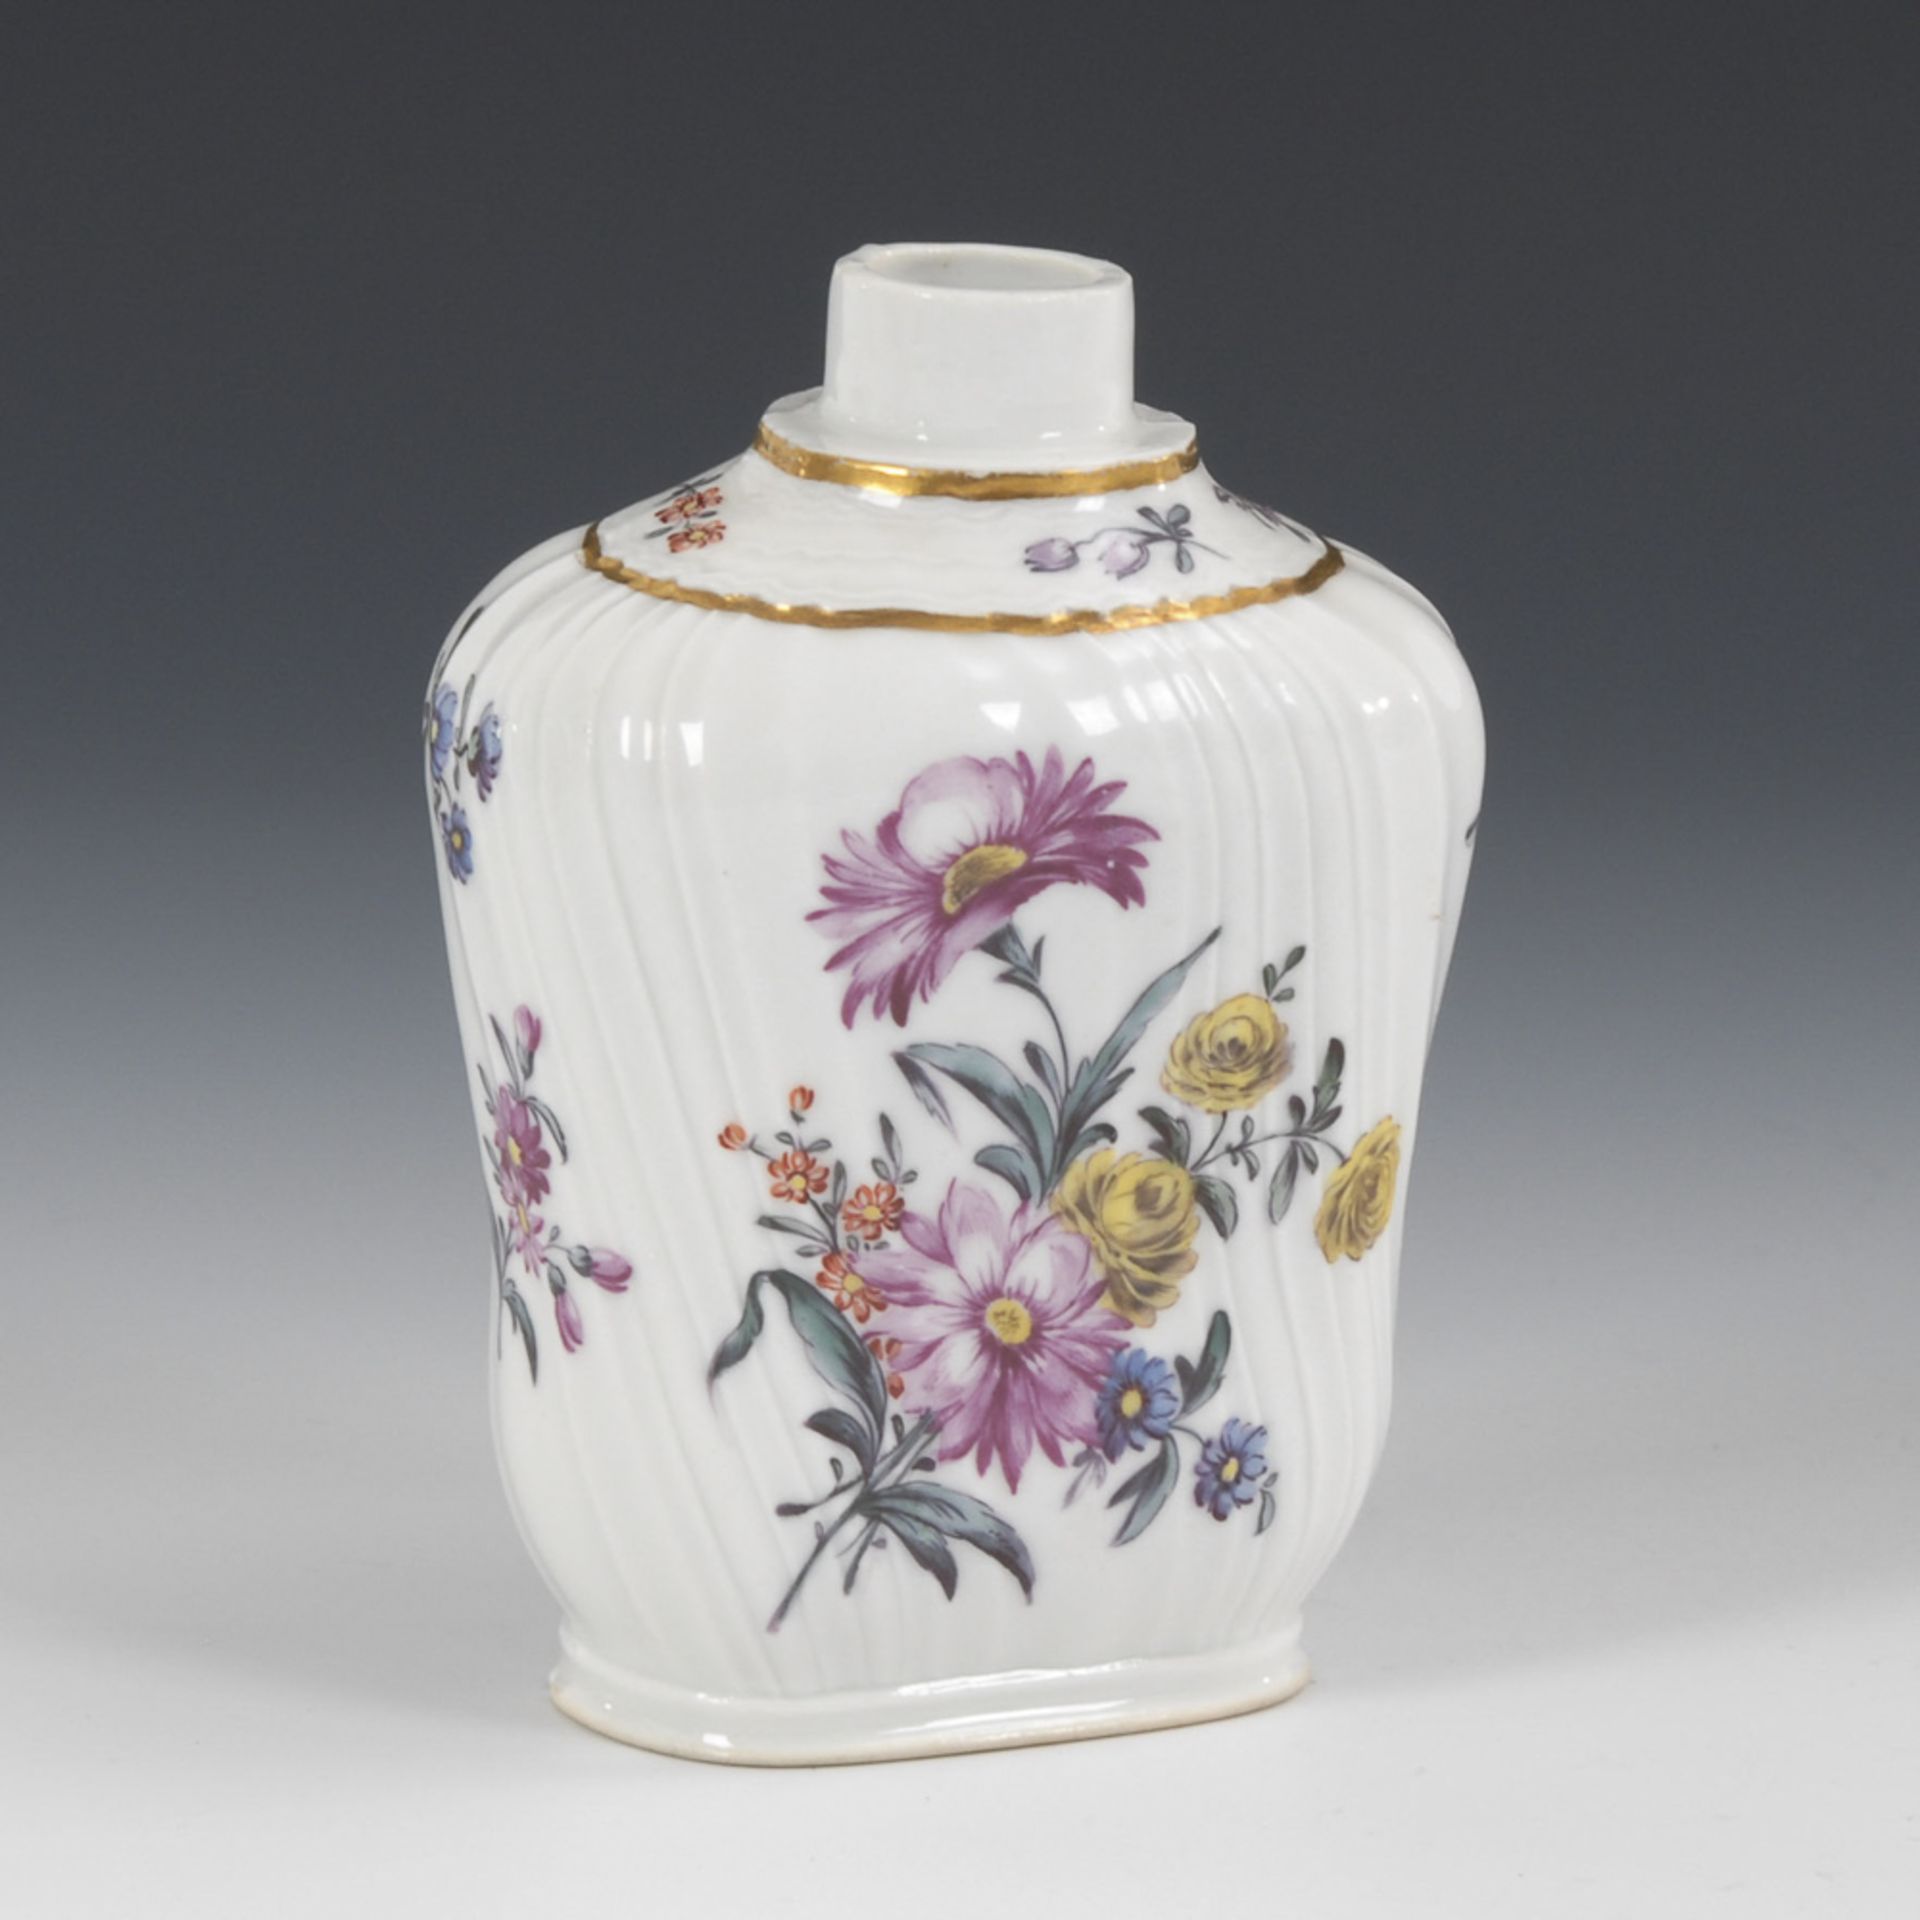 Teedose mit Blumenmalerei.Ungemarkt, wohl ANSBACH, 2. Hälfte 18. Jahrhundert. Polychrom bemalt, - Bild 2 aus 3